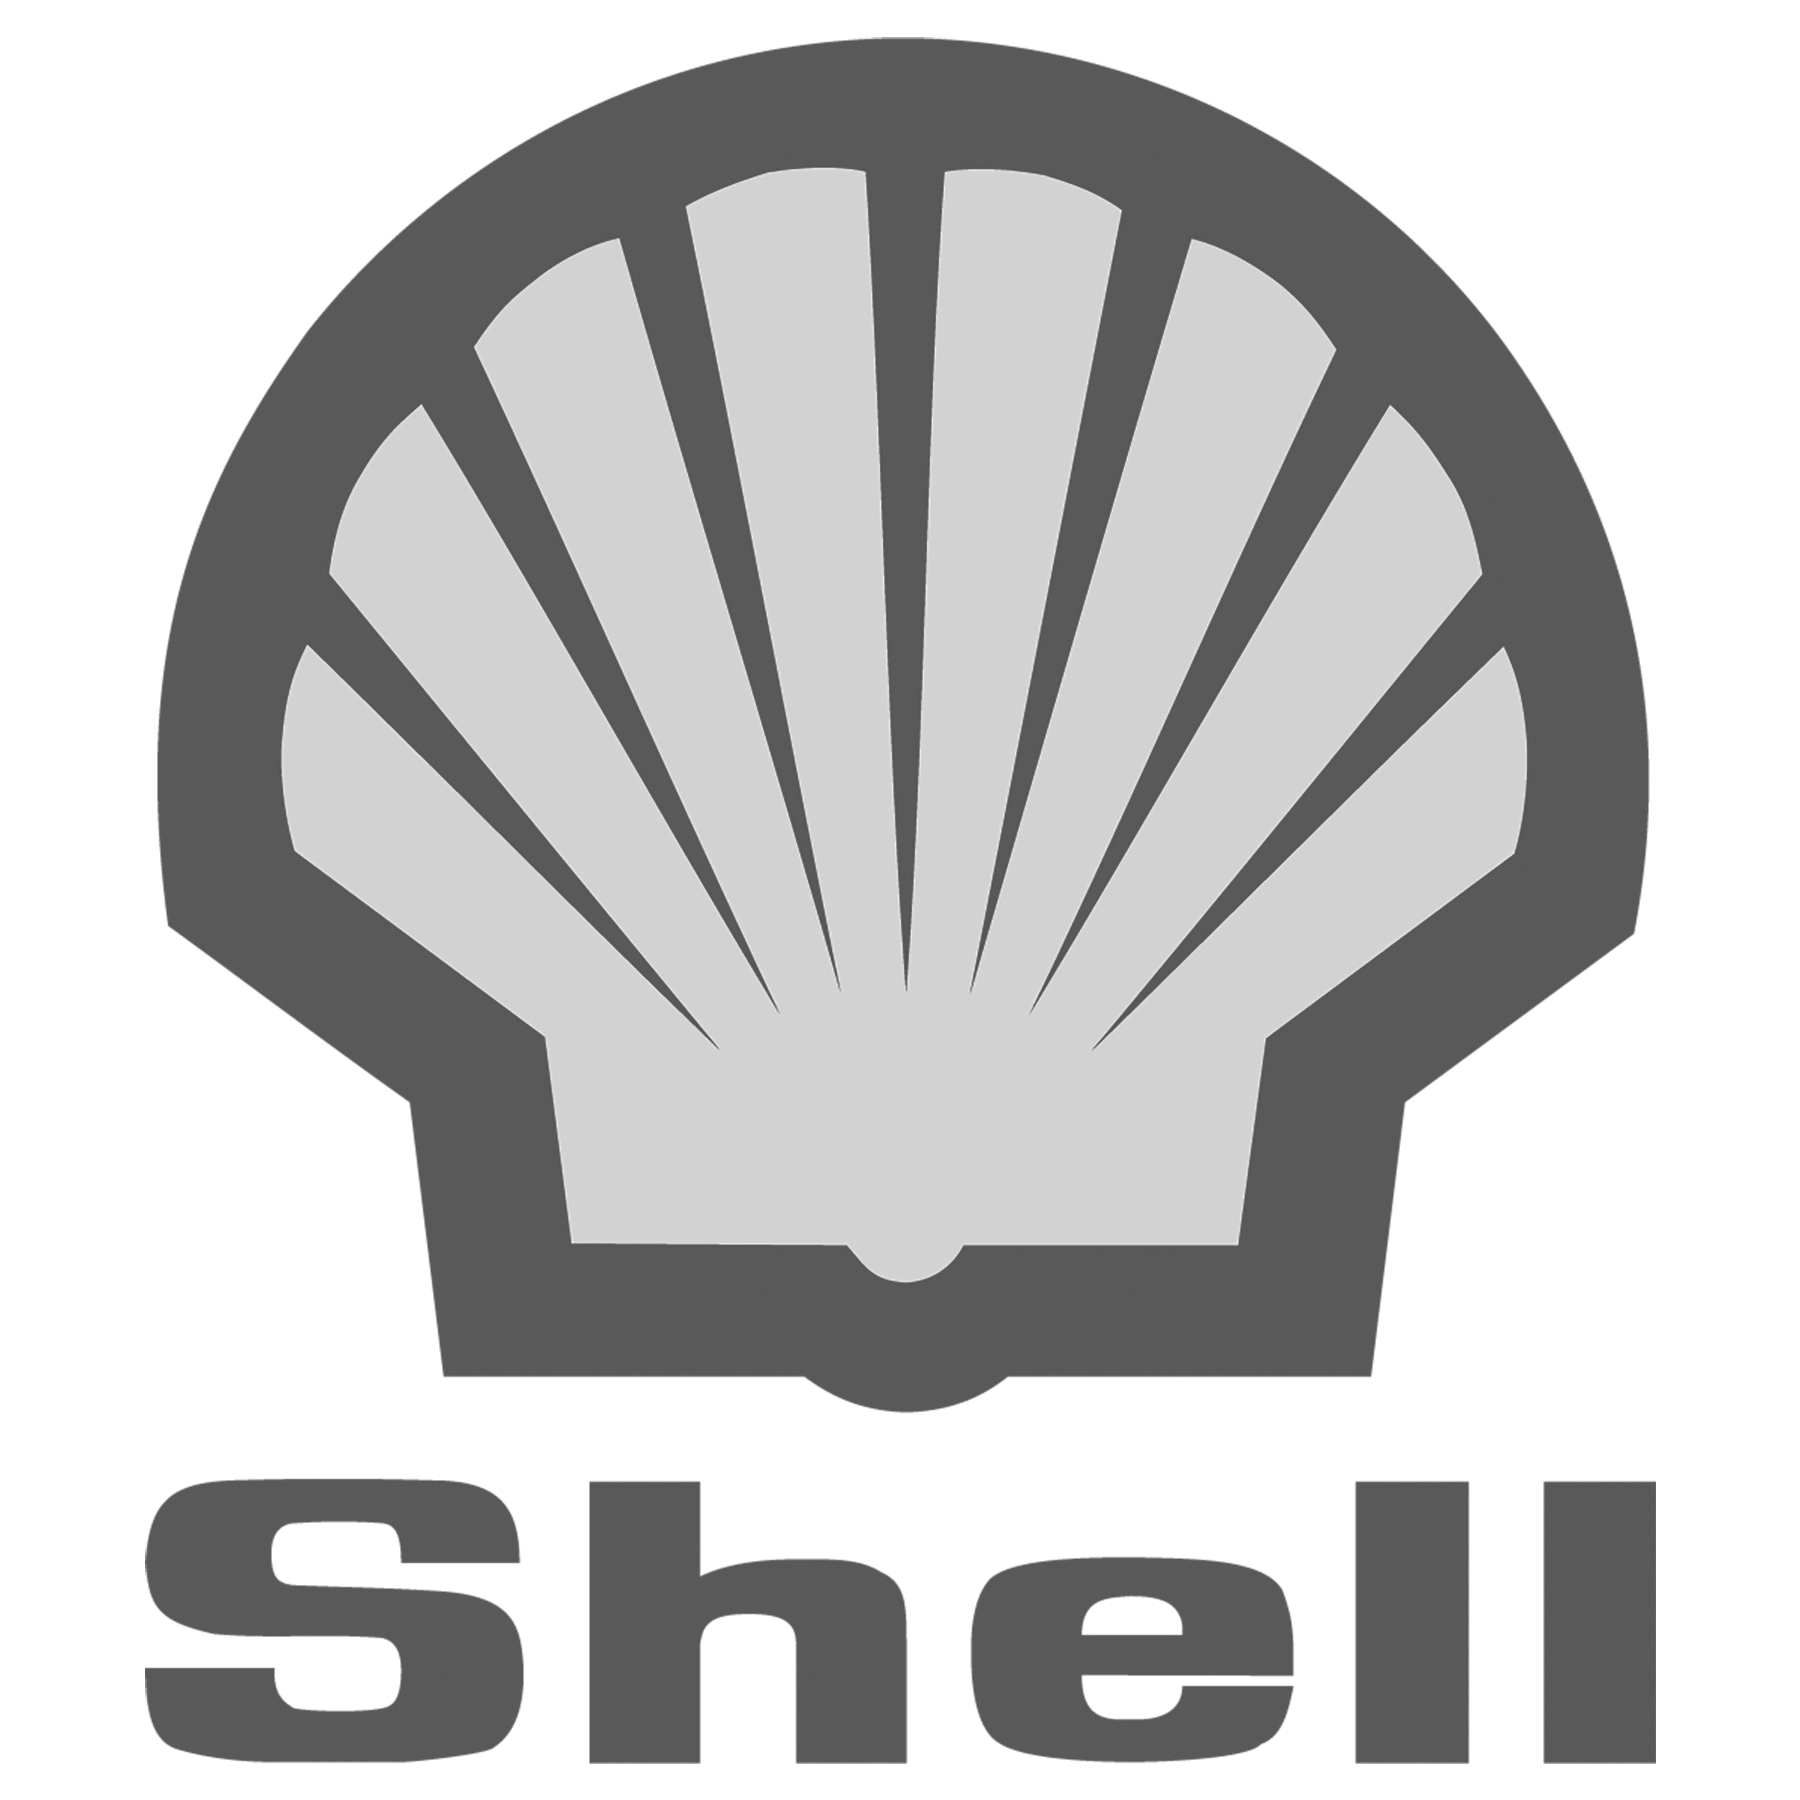 Shell_BWWeb.png